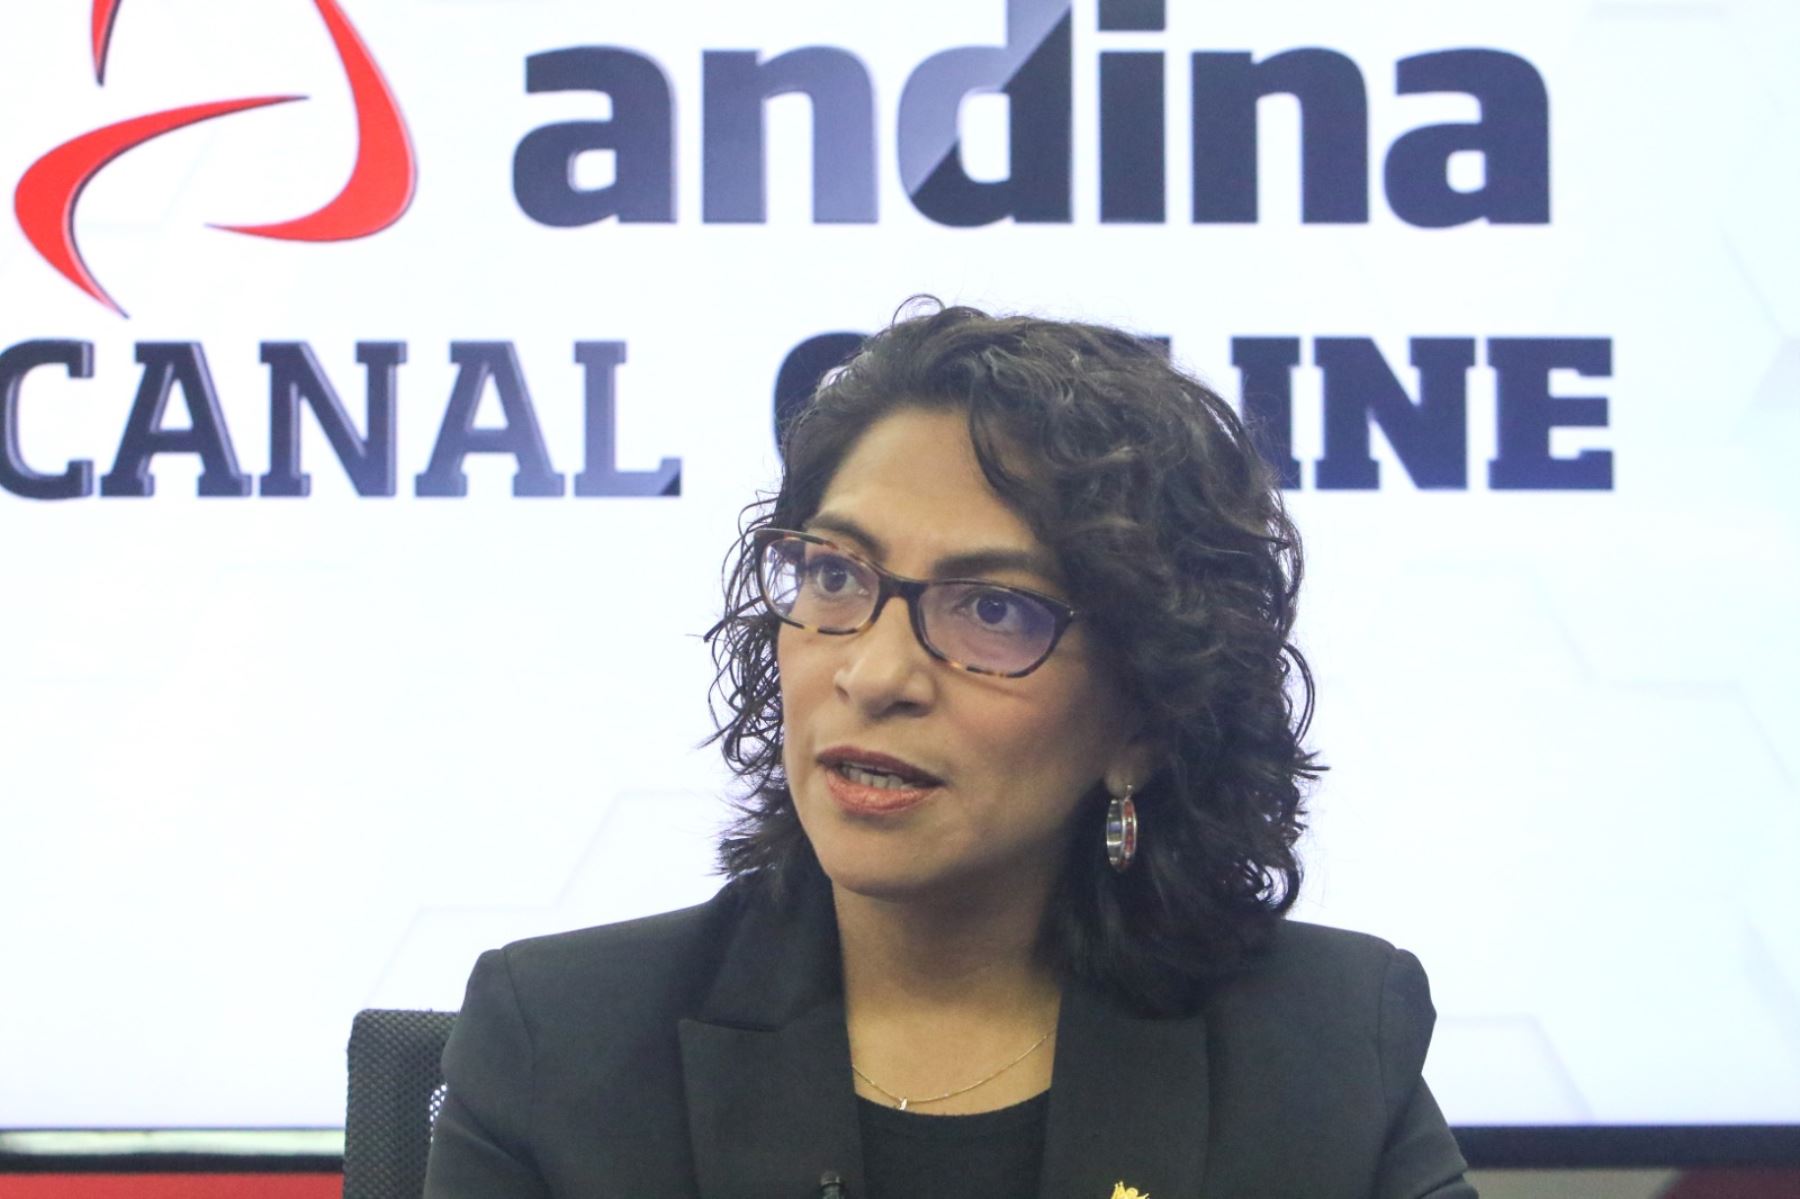 Leslie Urteaga, ministra de Cultura, en entrevista con Andina Canal Online. ANDINA/Héctor Vinces